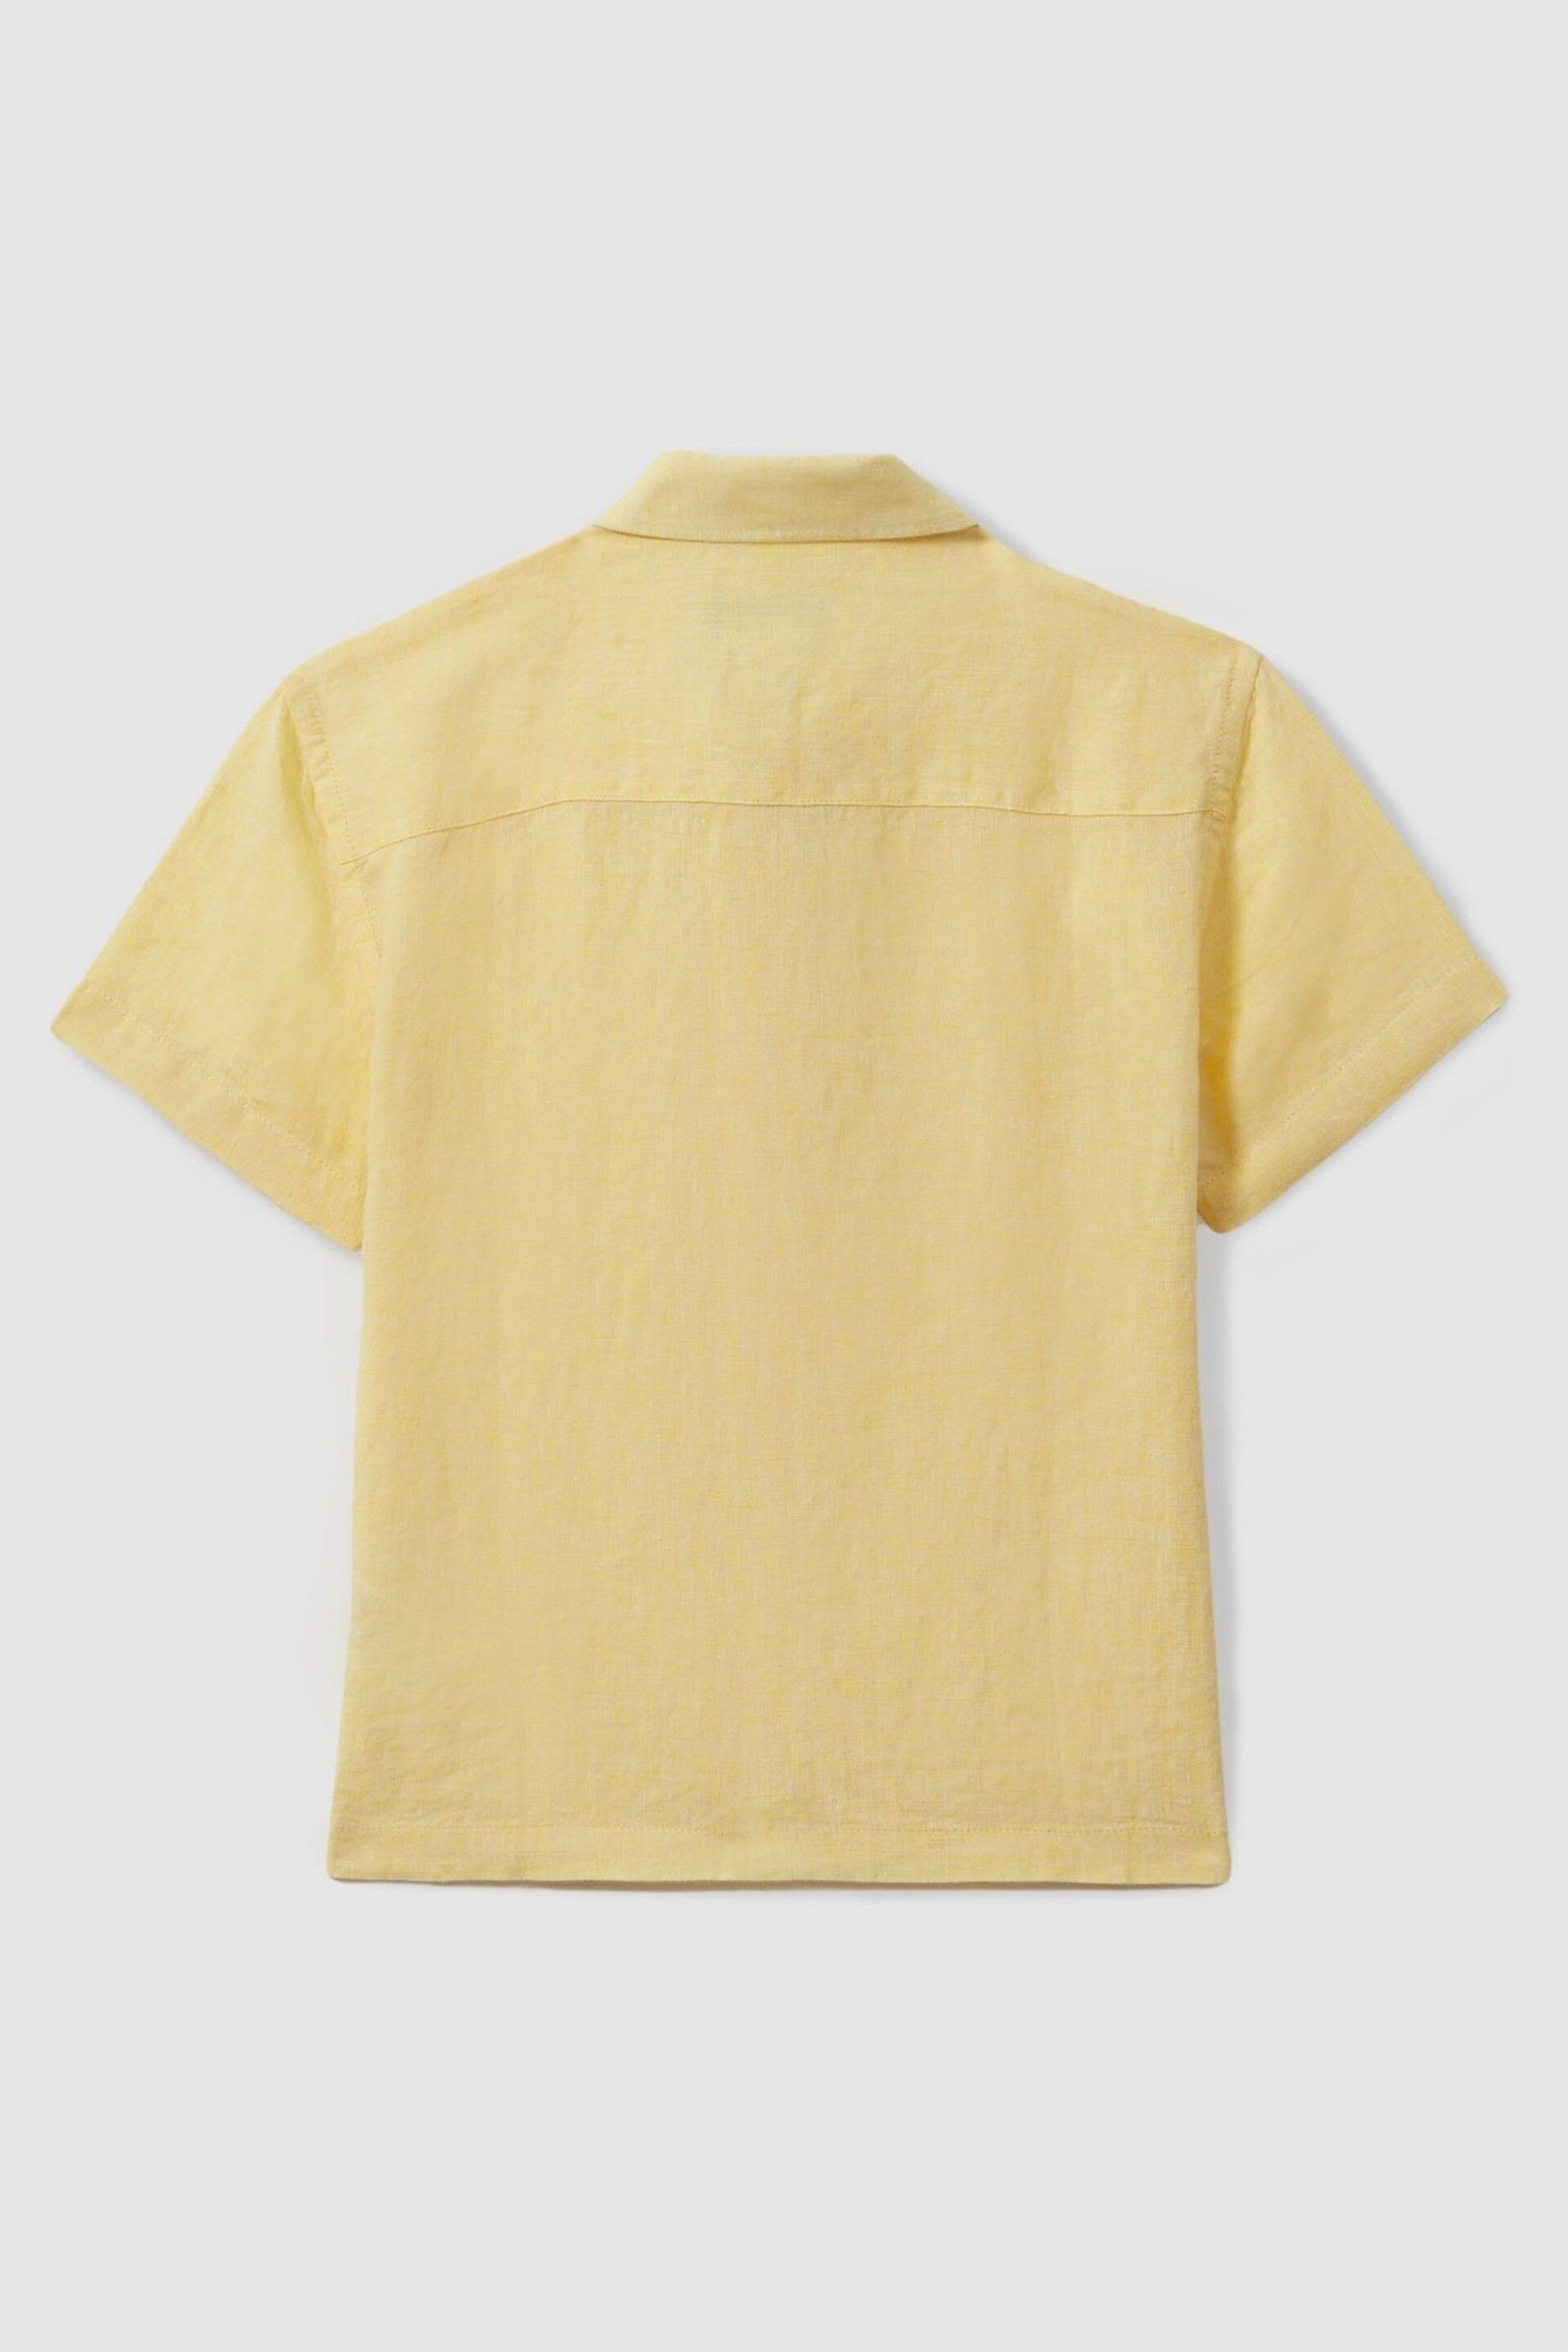 Reiss Melon Holiday Teen Short Sleeve Linen Shirt - Image 2 of 3